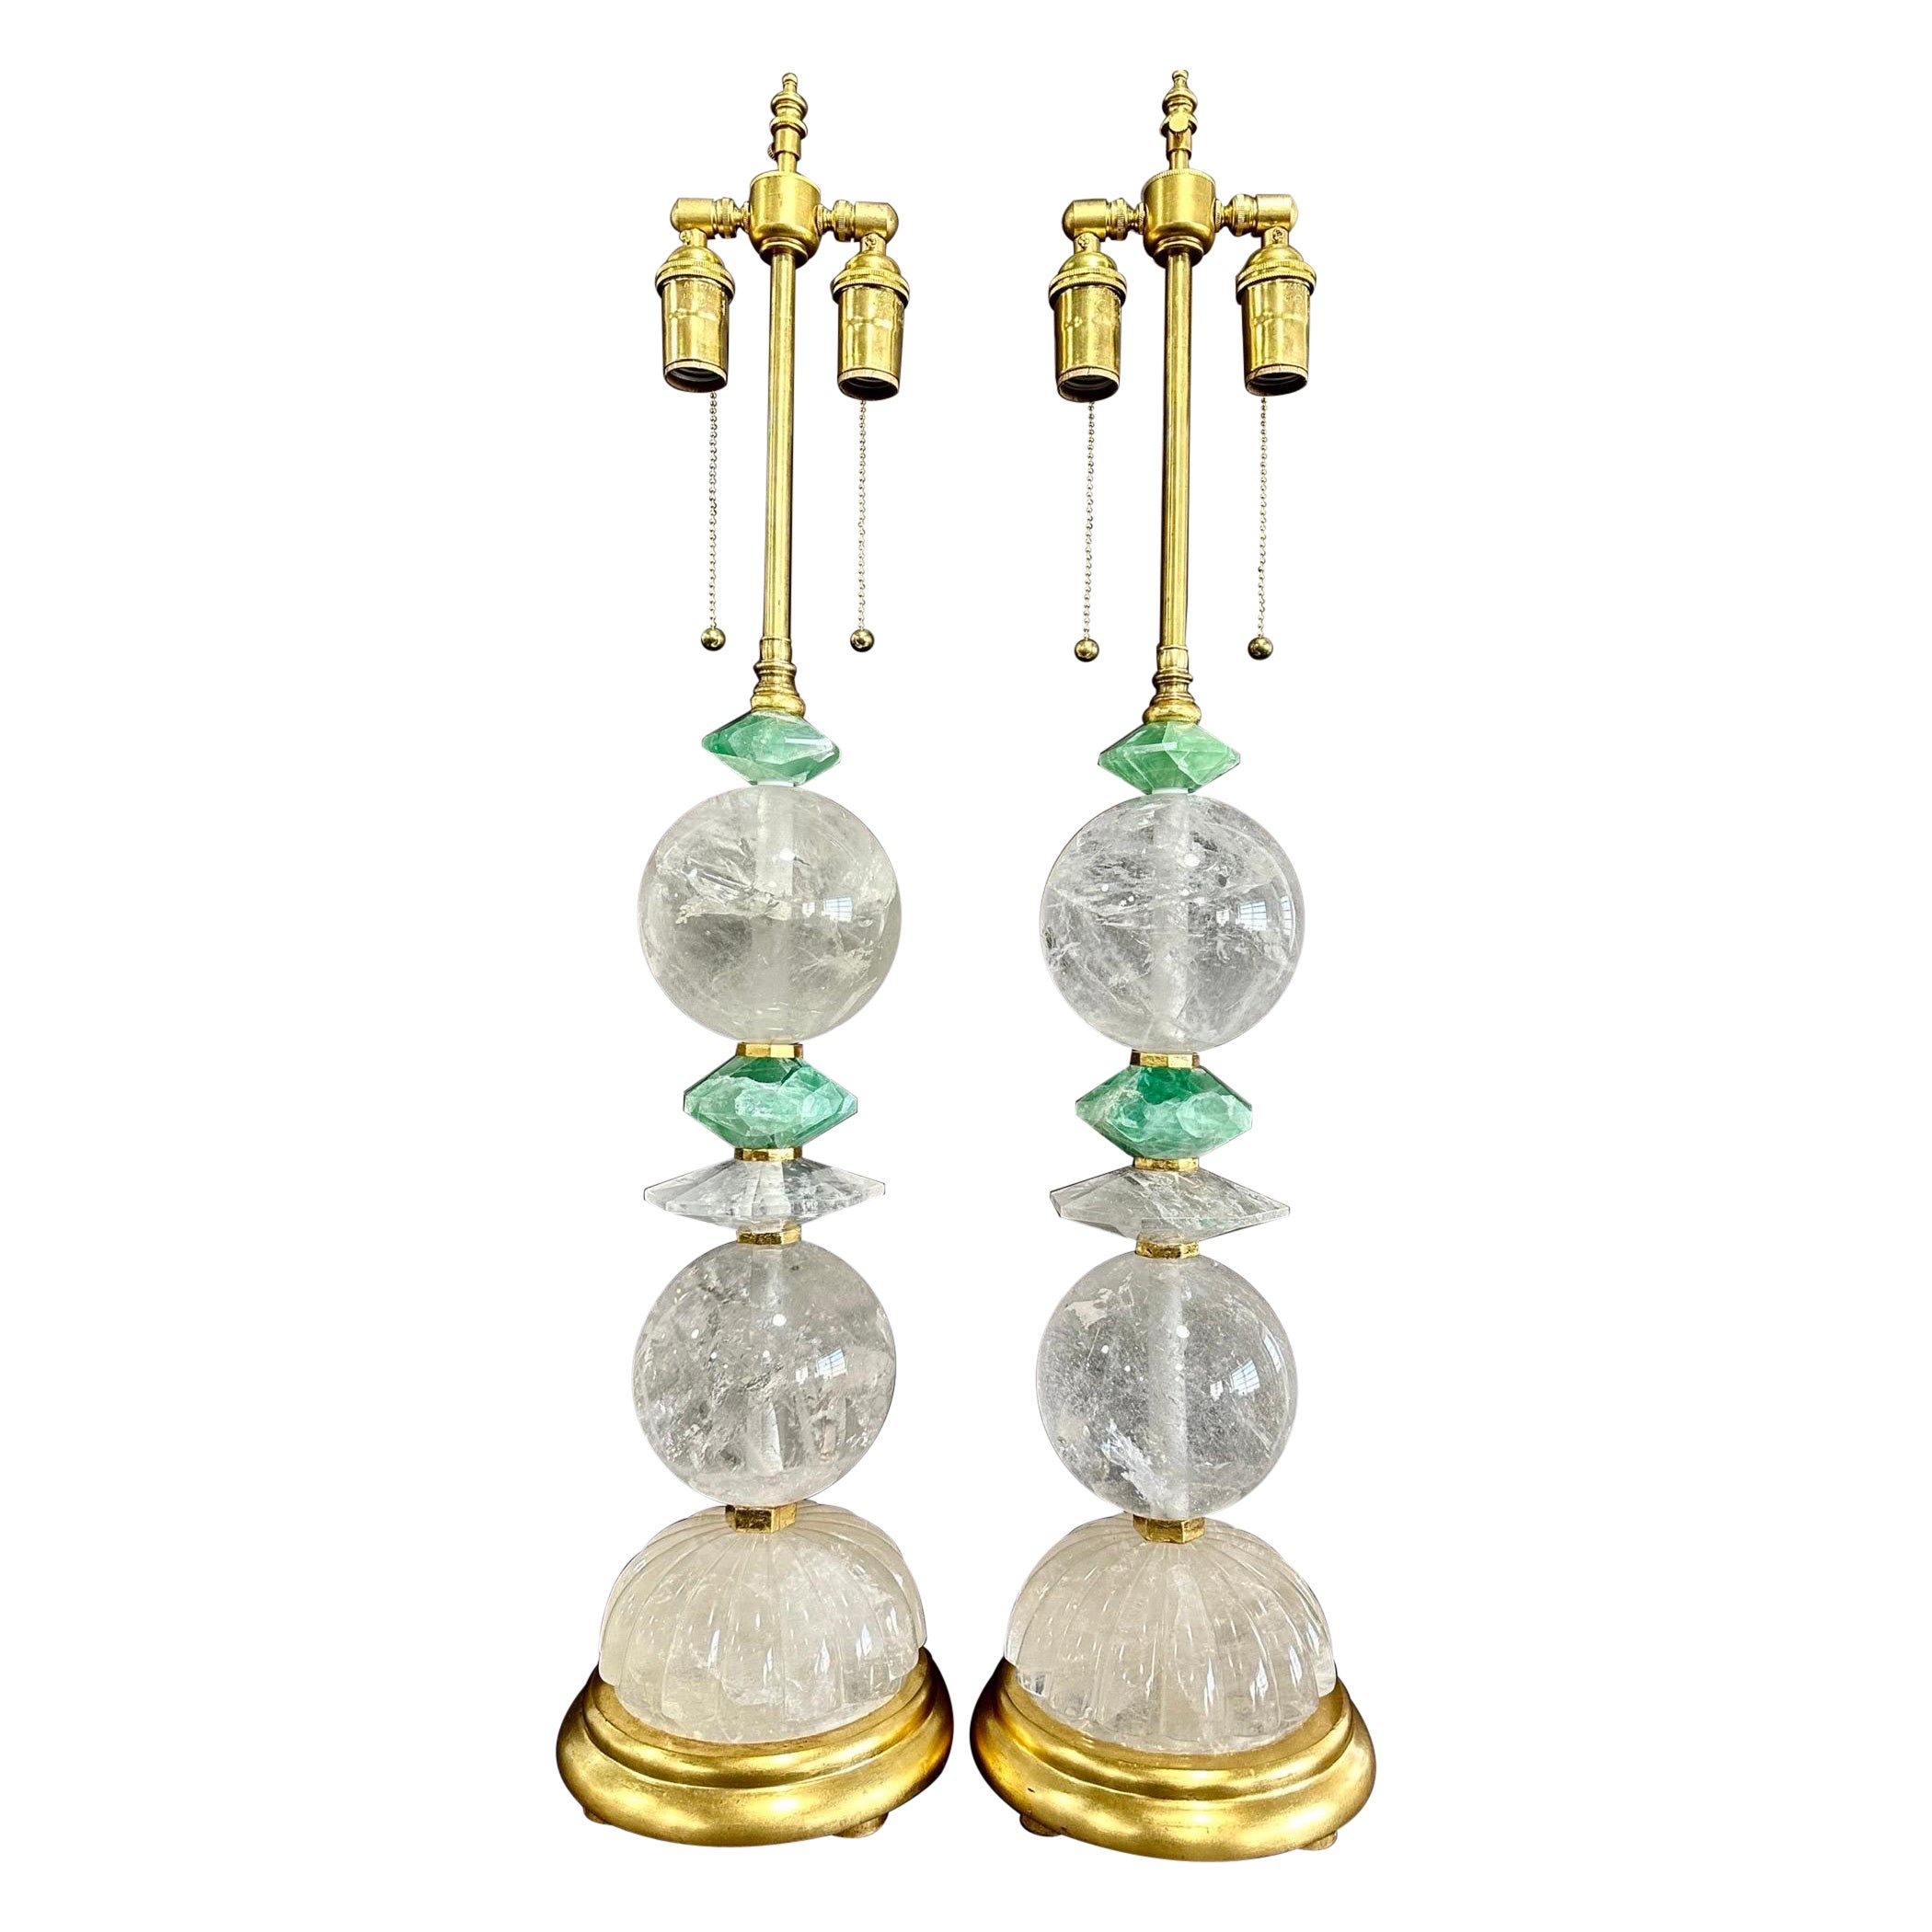 Merveilleuse paire de lampes en cristal de roche, vert et quartz doré, de style Modernity du milieu du siècle dernier